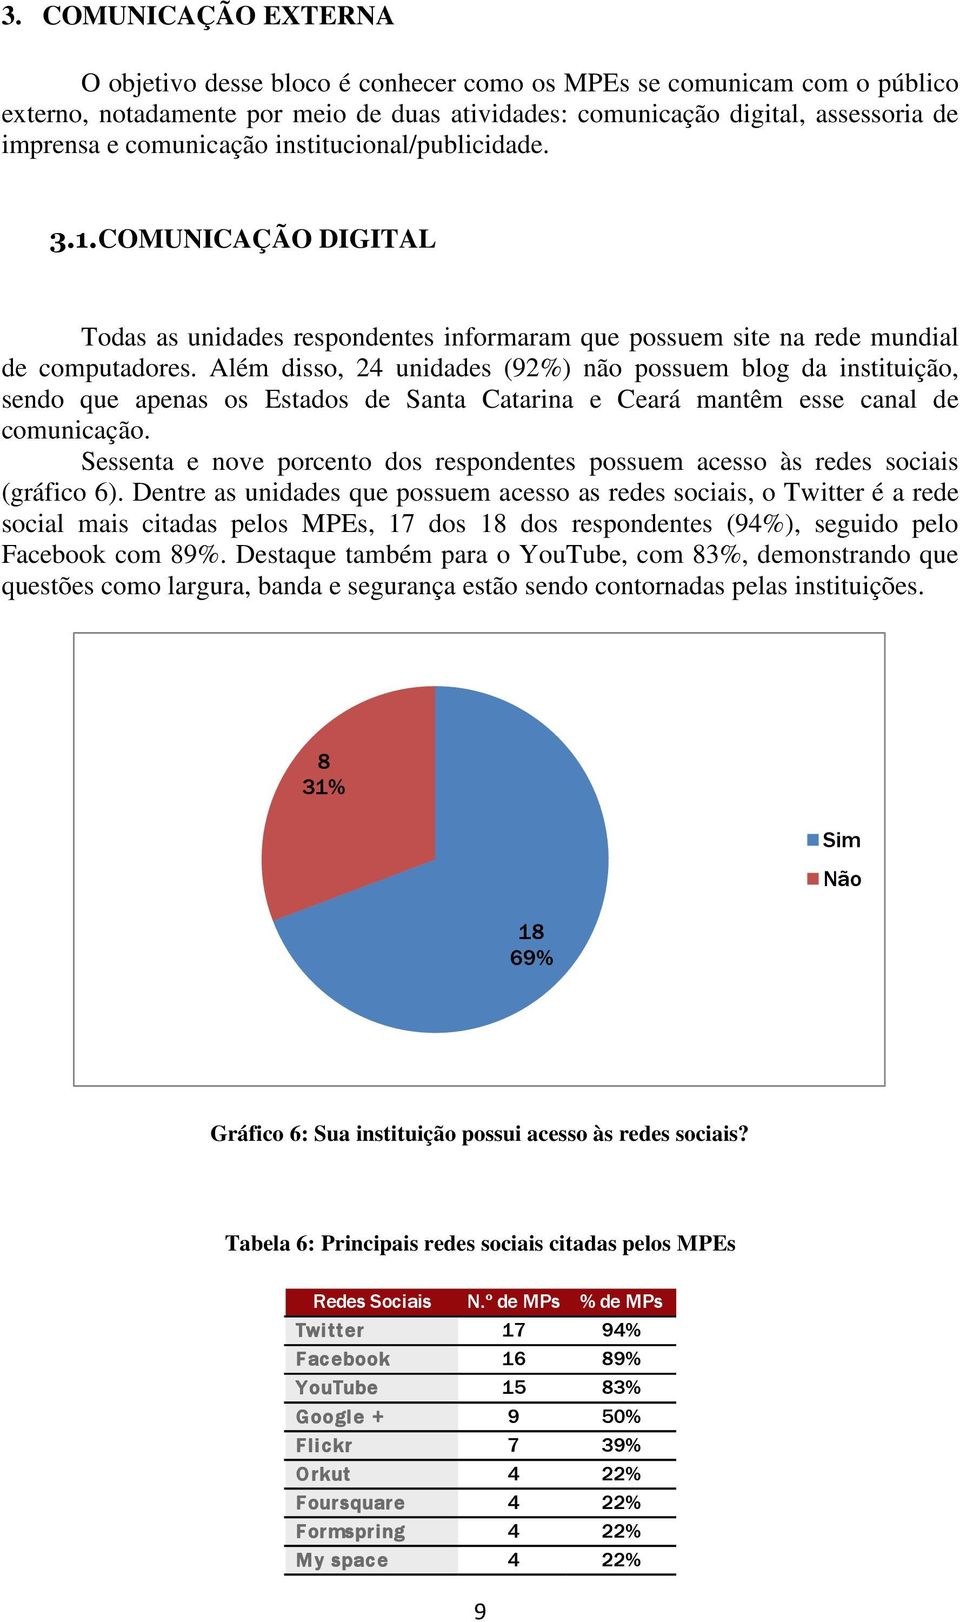 Além disso, 2 unidades (92%) não possuem blog da instituição, sendo que apenas os Estados de Santa Catarina e Ceará mantêm esse canal de comunicação.